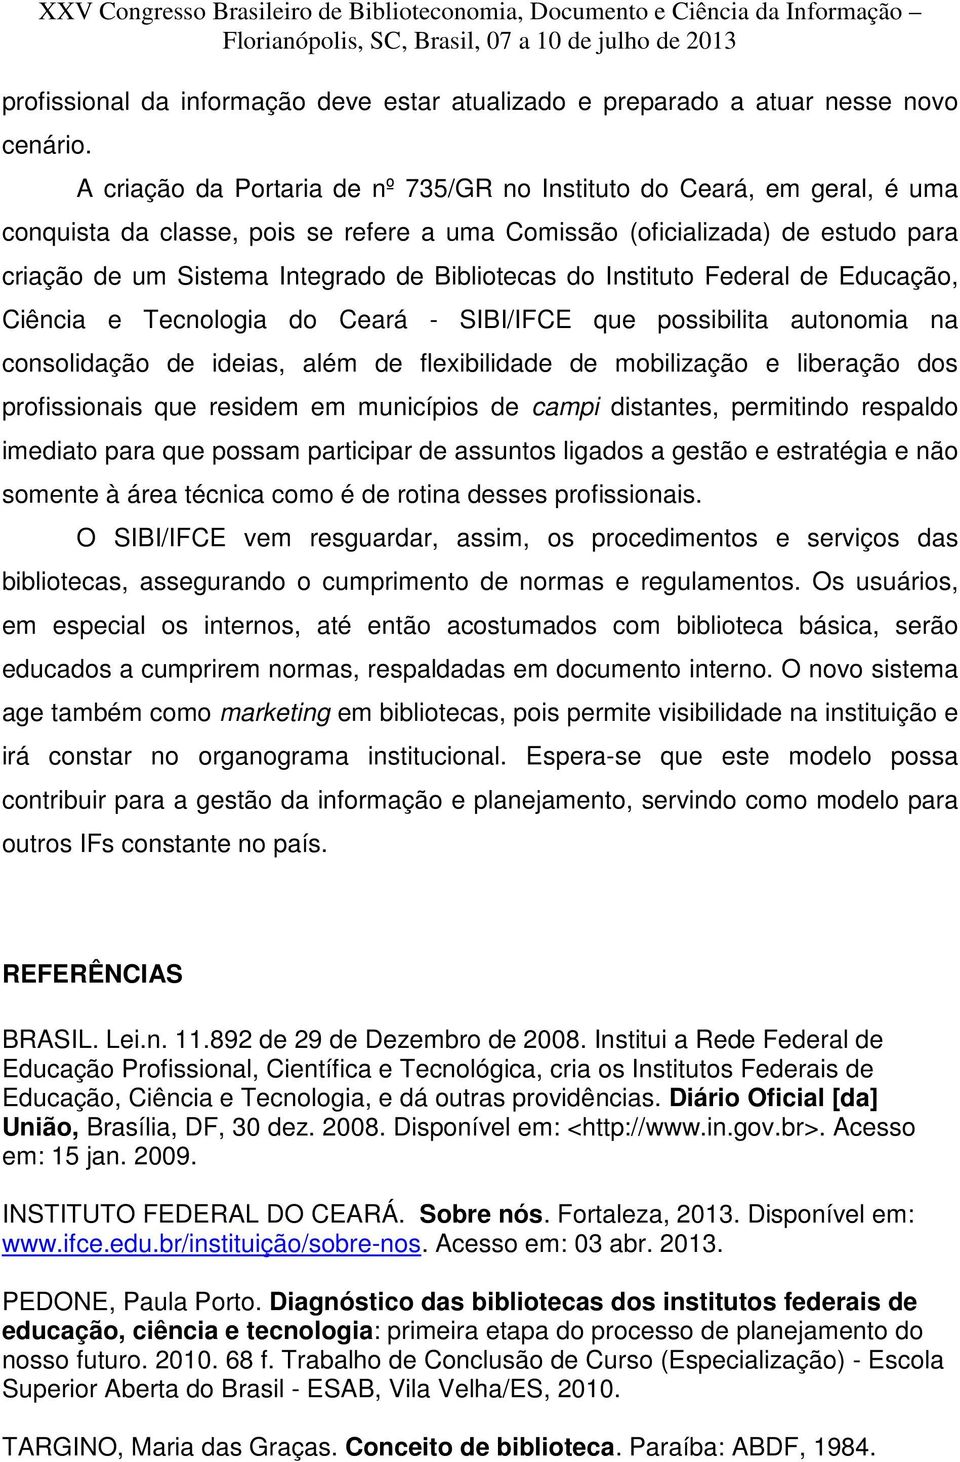 Bibliotecas do Instituto Federal de Educação, Ciência e Tecnologia do Ceará - SIBI/IFCE que possibilita autonomia na consolidação de ideias, além de flexibilidade de mobilização e liberação dos